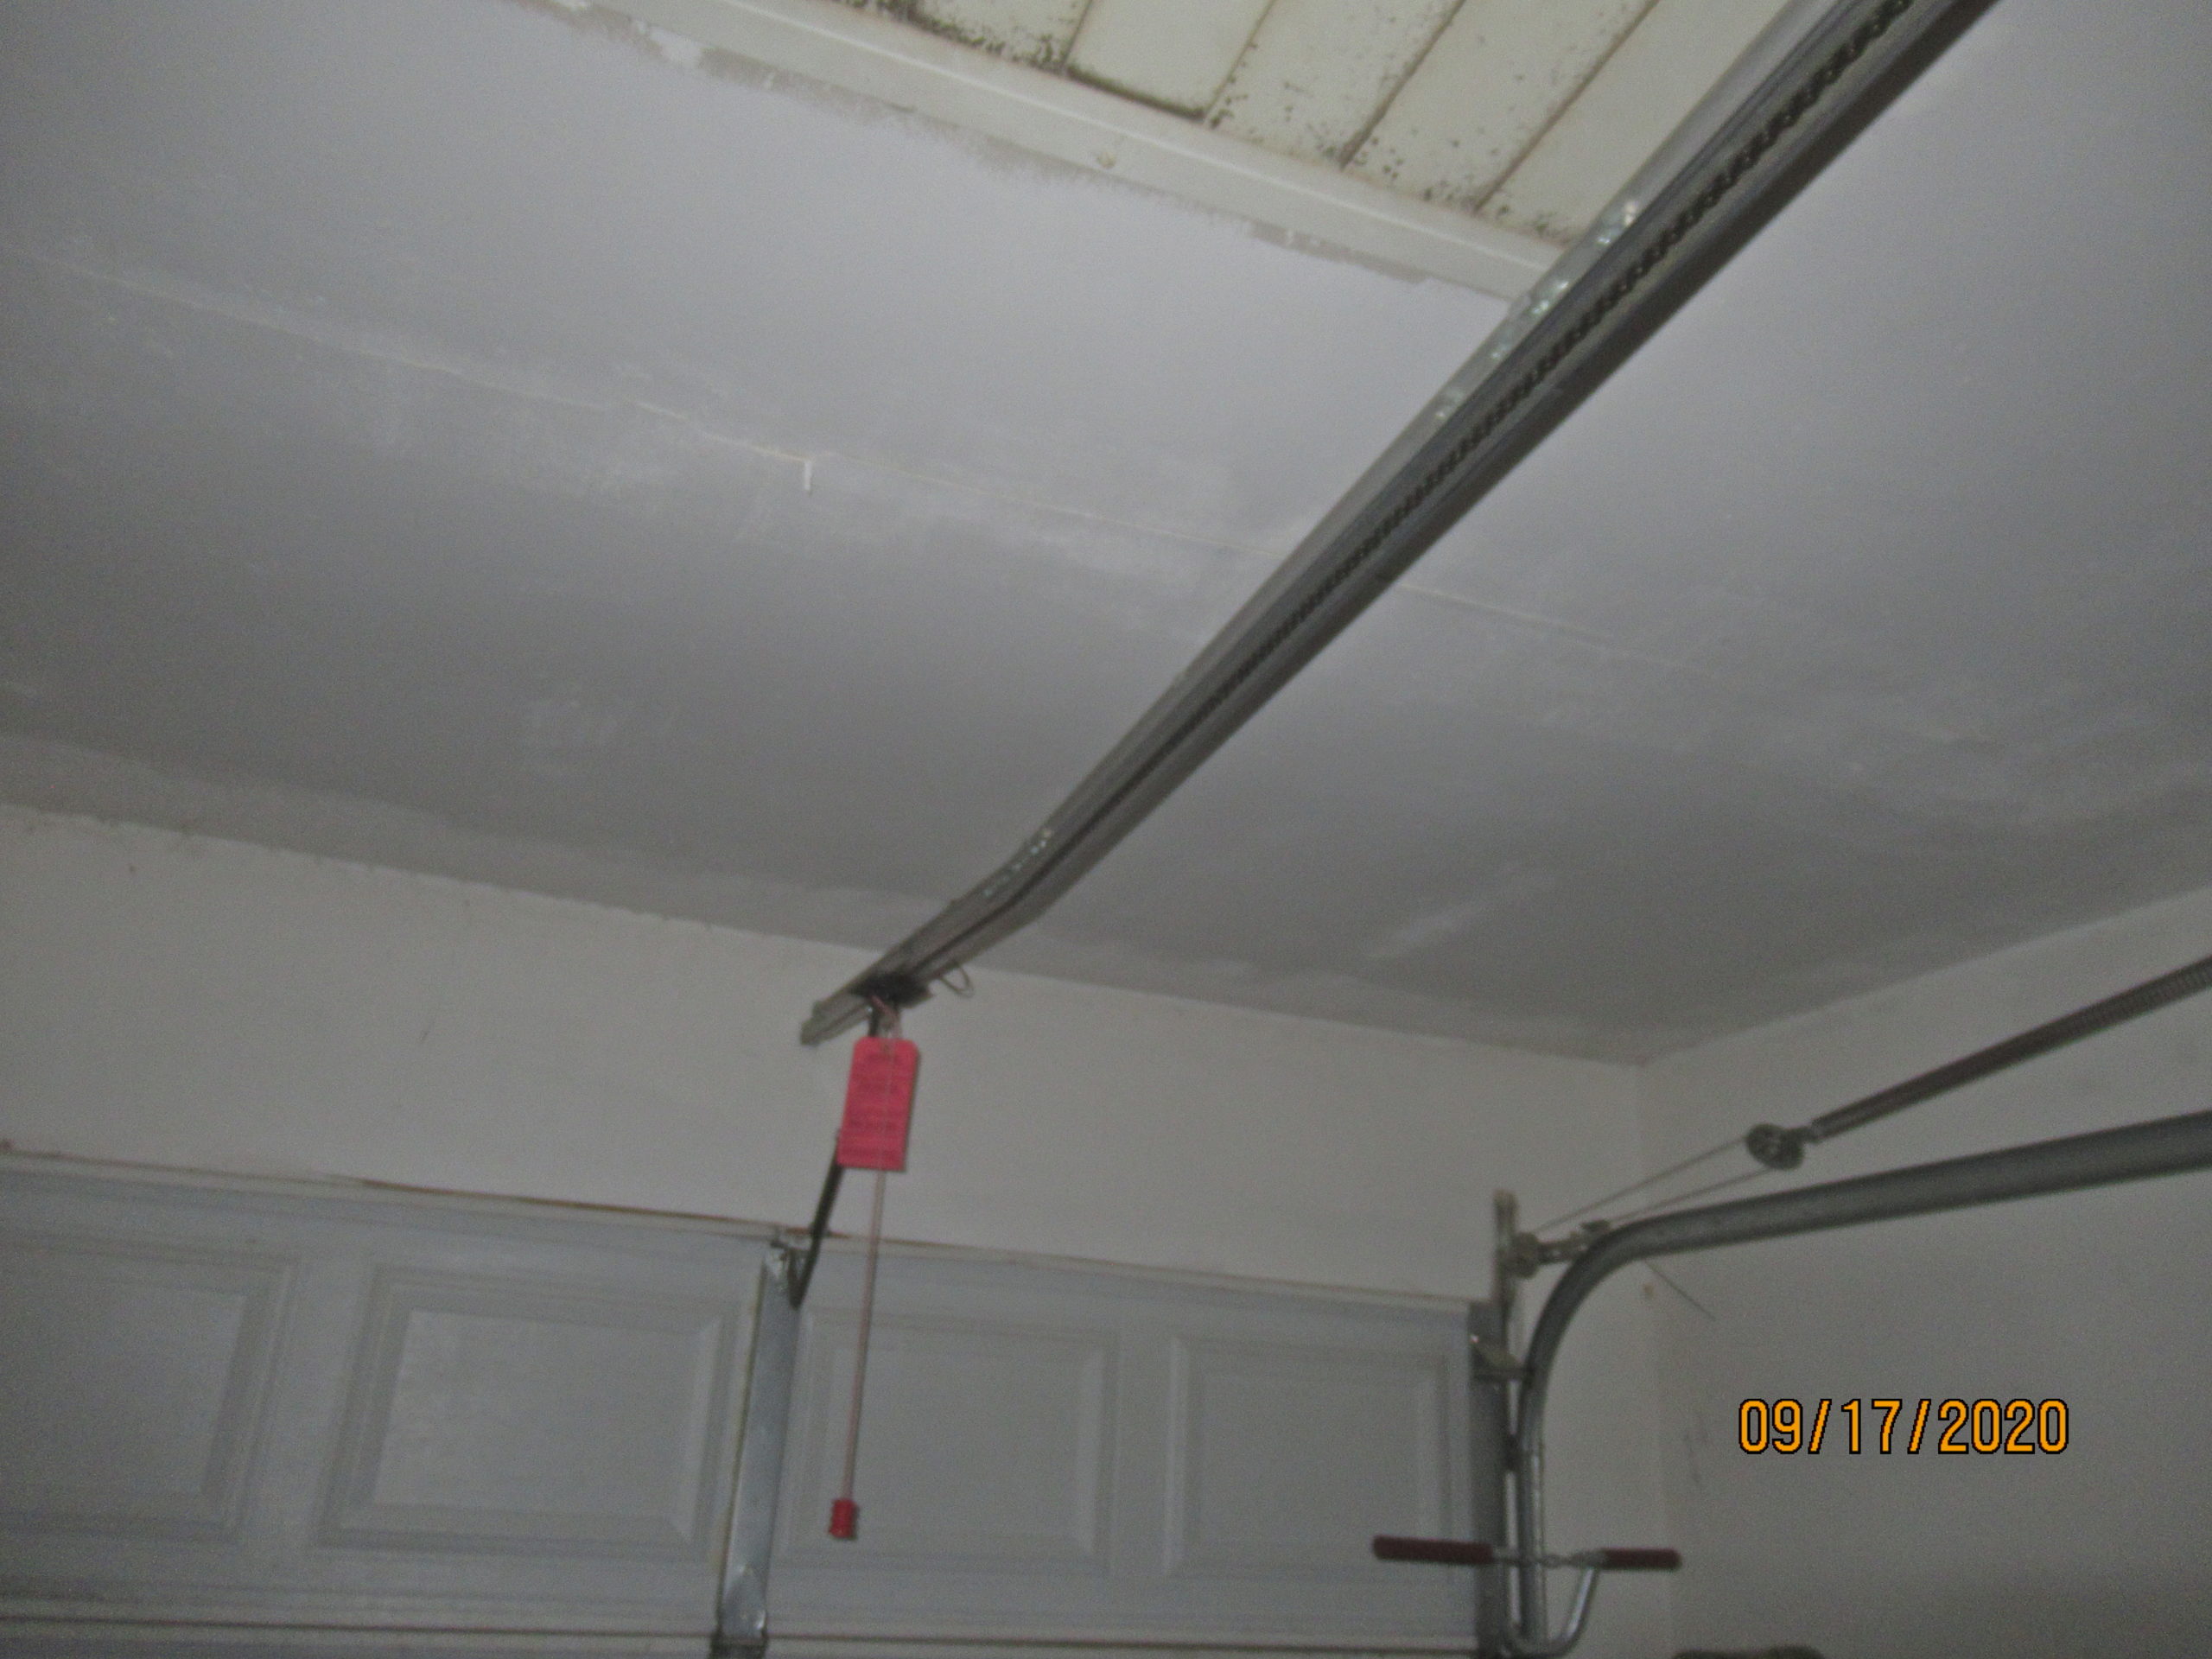 Bent garage door belt rail